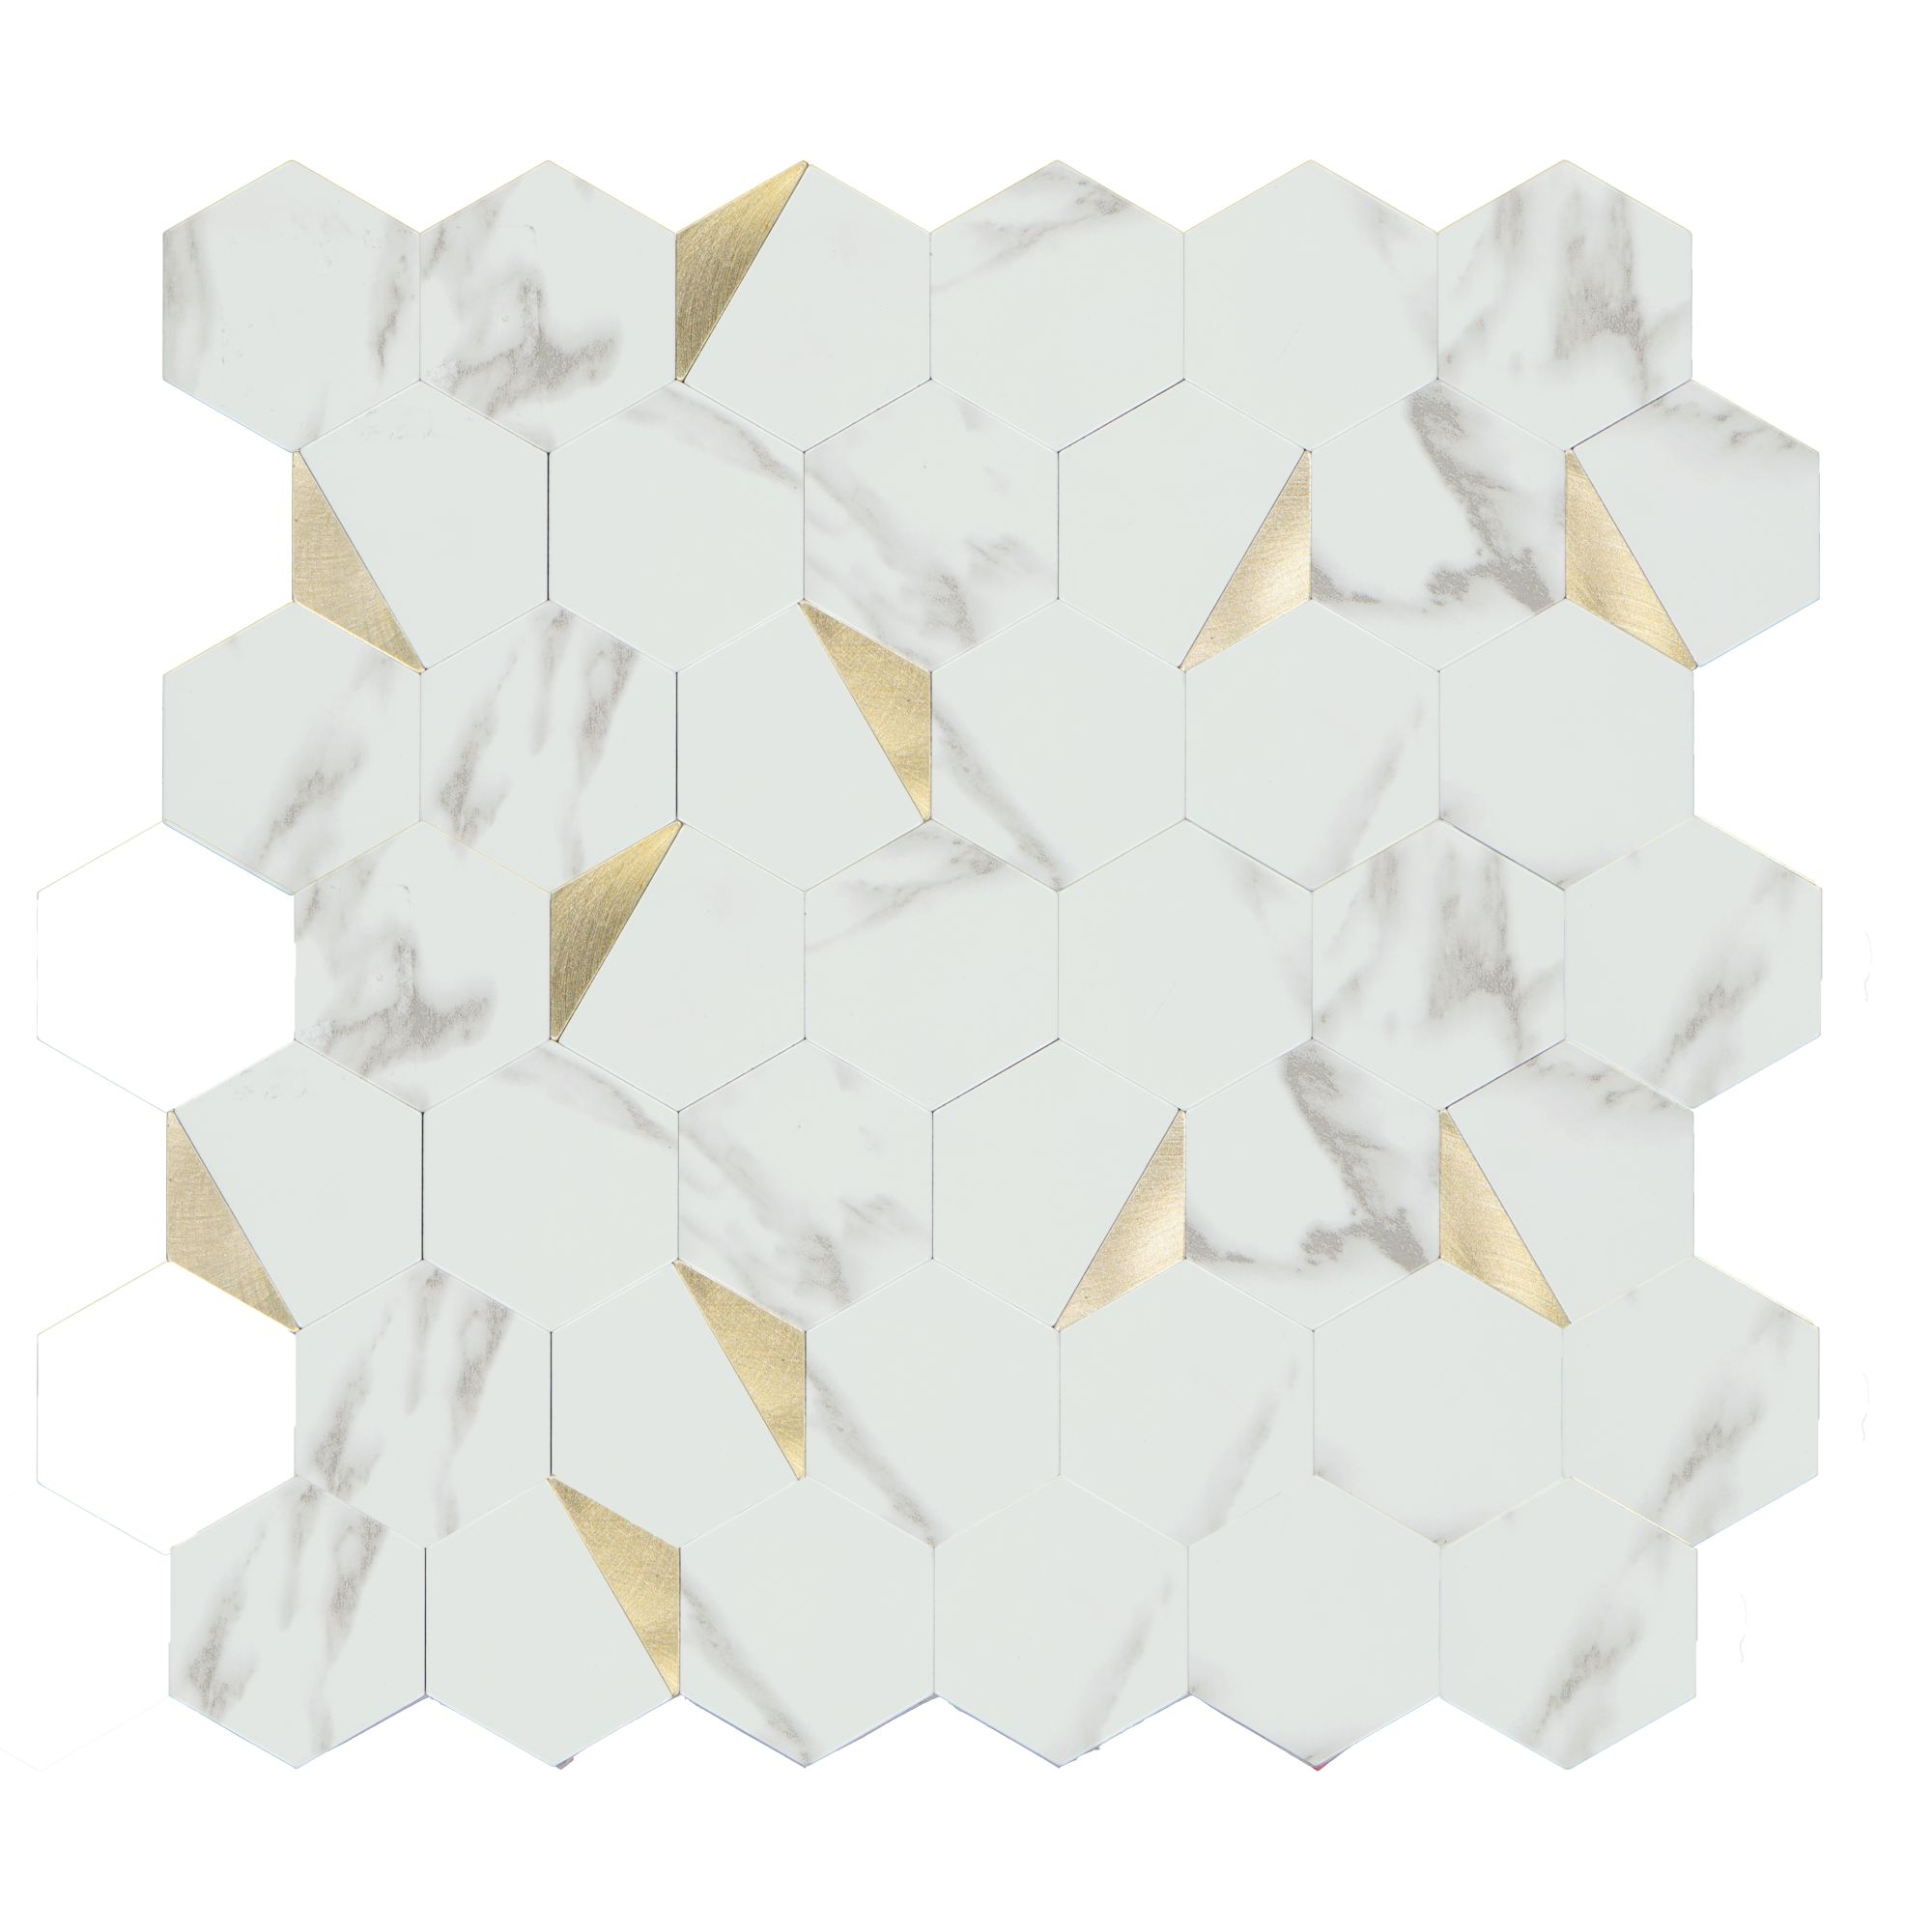 Mosaikfliese 'Easyglue' selbstklebend weiß/gold Kunststoff 29 x 29 cm + product picture